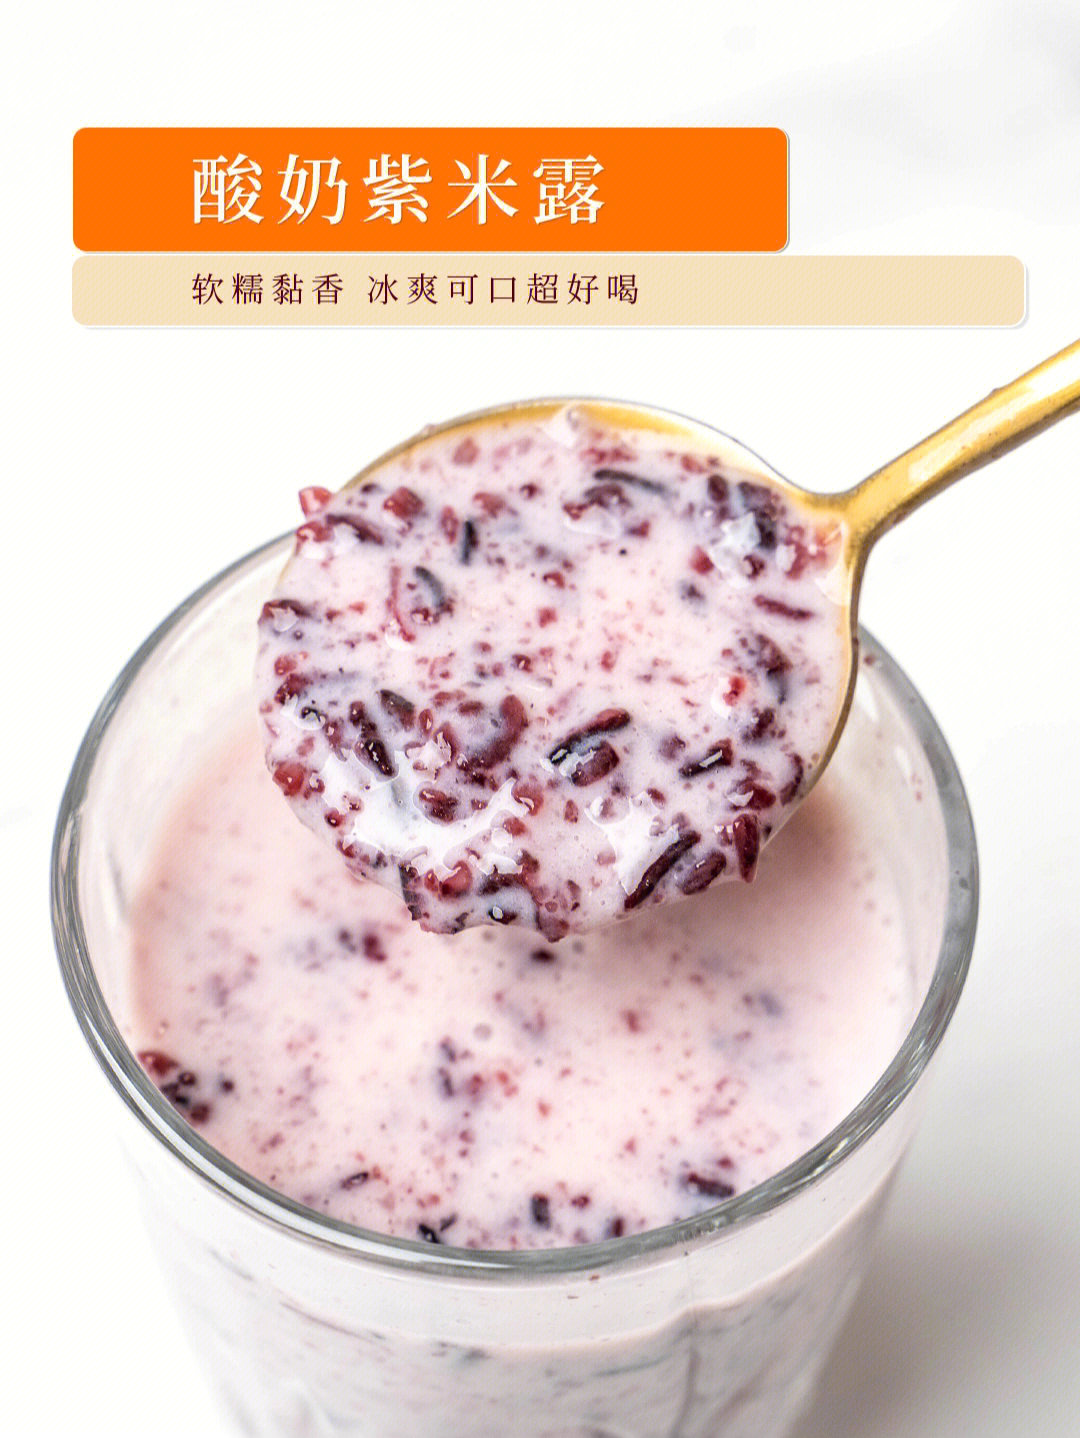 酸奶紫米露碗装图片